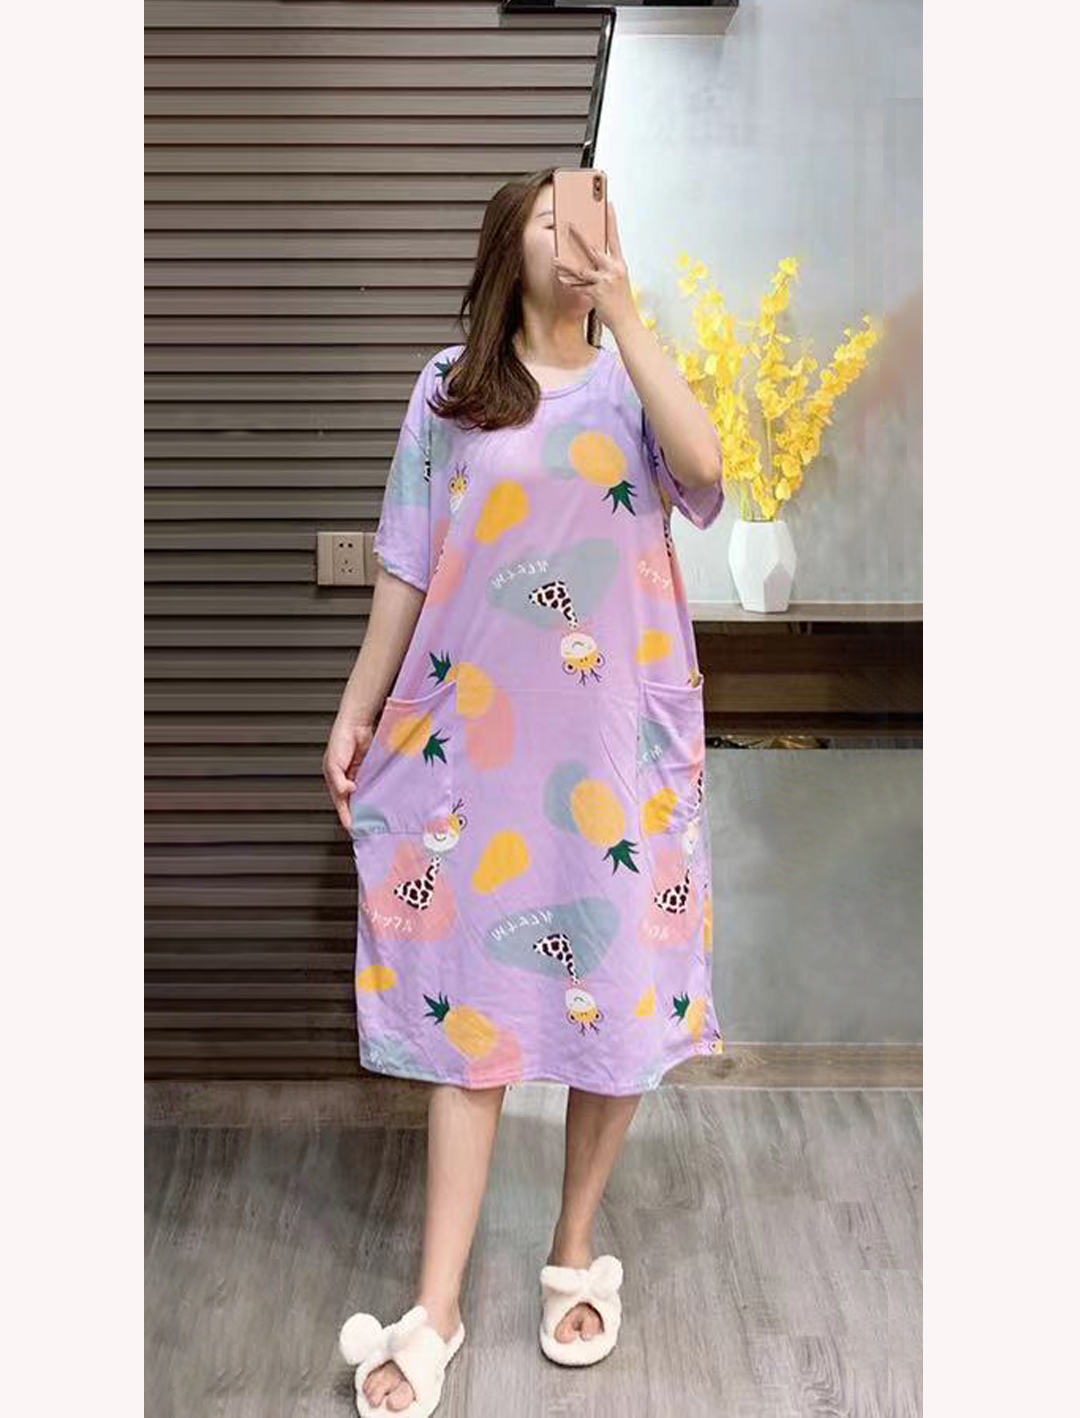 2021 ใหม่สไตล์เกาหลีชุดนอนผู้หญิงฤดูร้อนหลวมขนาดใหญ่แขนสั้นชุดนอนกระเป๋ากลางยาว / ใส่อยู่บ้านLoose plus size home wear pajamas/night skirts